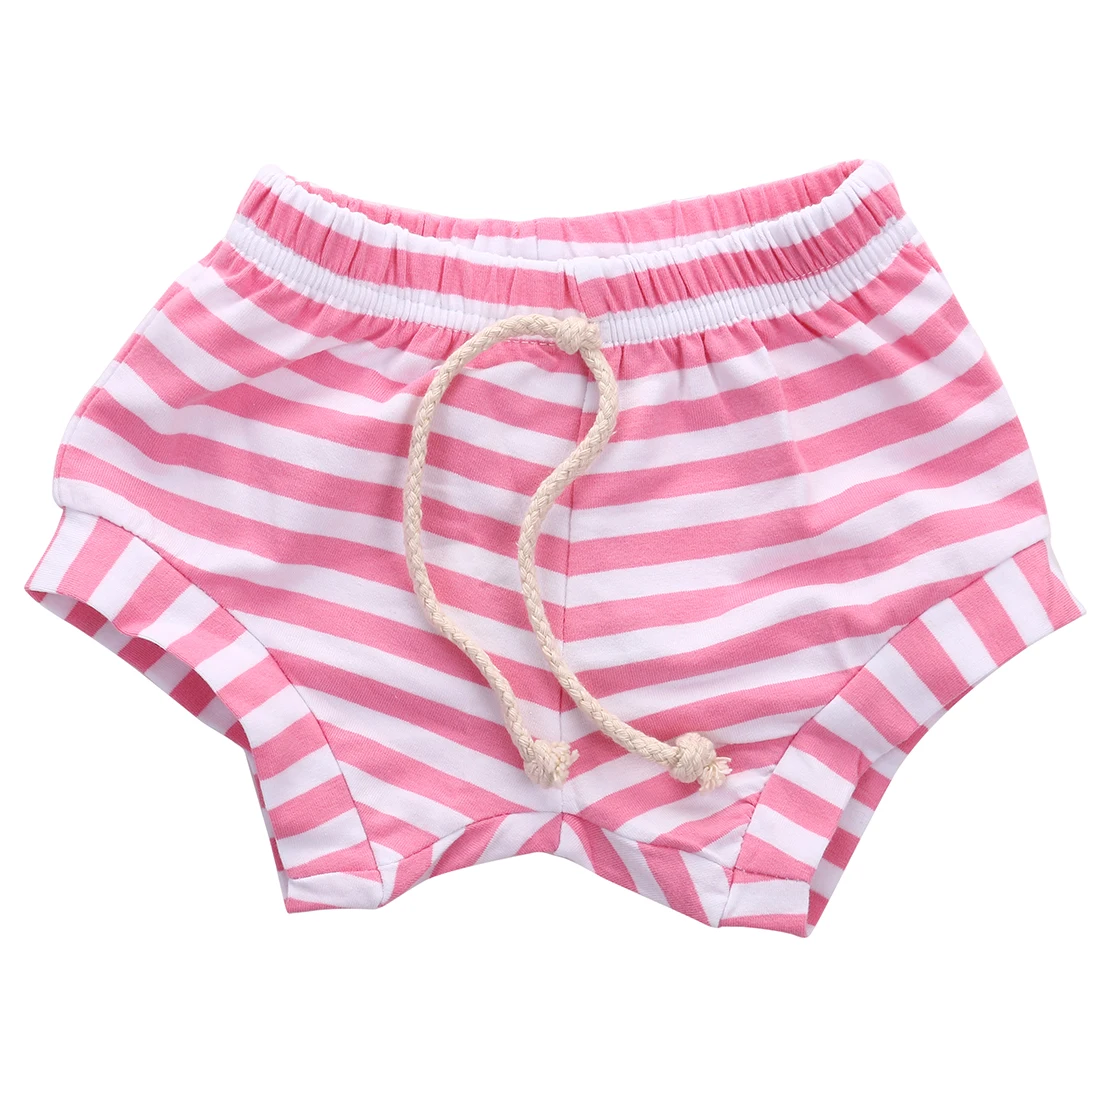 Новые Симпатичные для маленьких мальчиков и девочек зауженные книзу брюки летние шаровары PP детские штаны - Цвет: Розовый